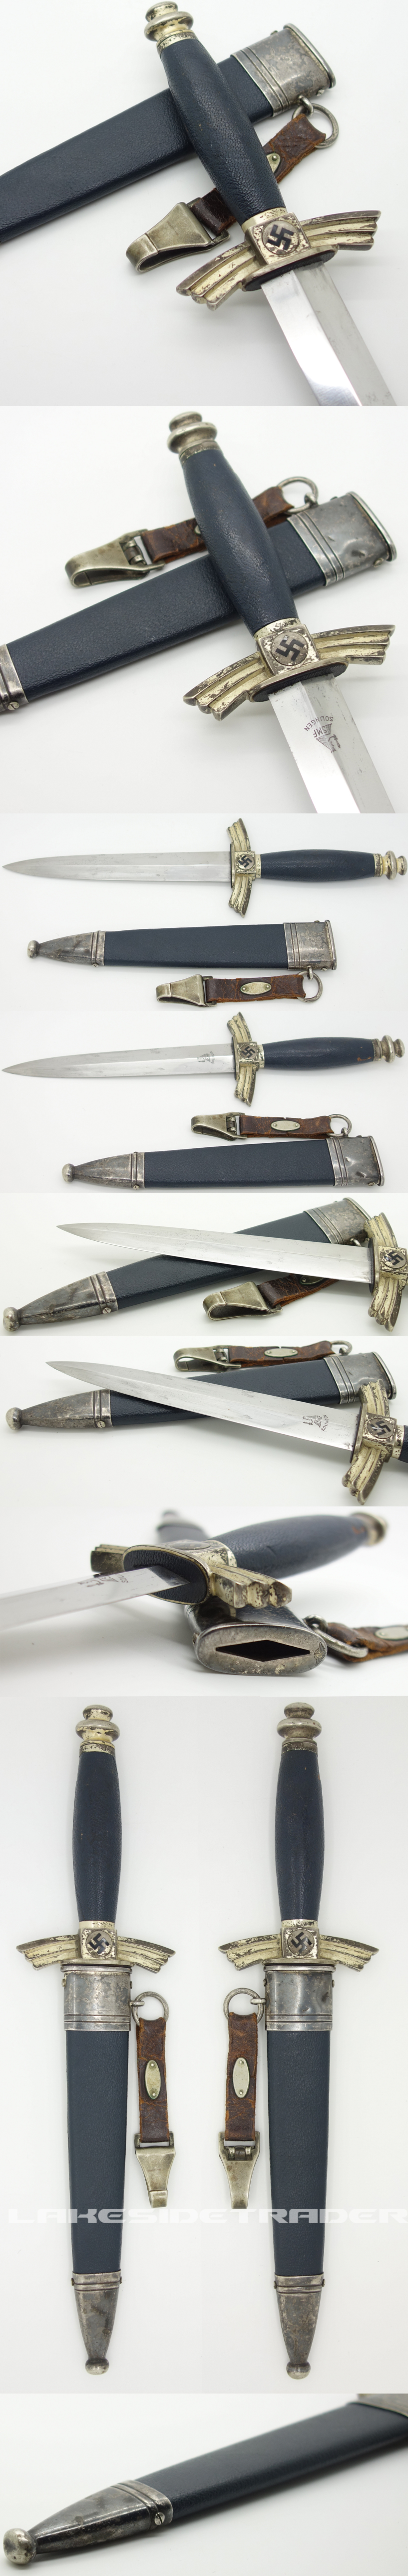 DLV Knife by SMF